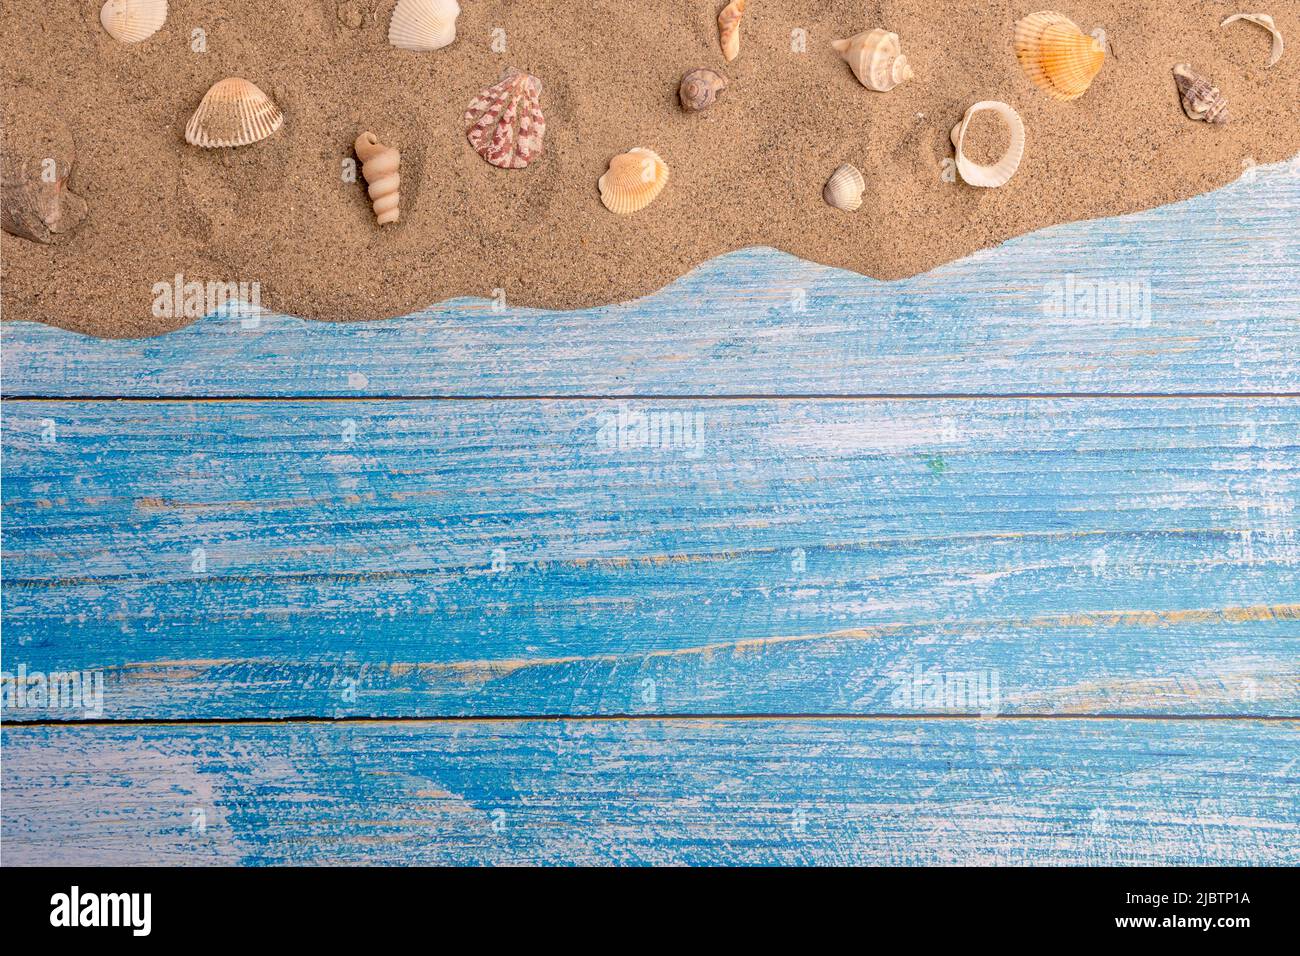 Coquillages sur le sable sur fond bleu. Vacances d'été, plage, détente, mer, océan, concept de voyage. Banque D'Images